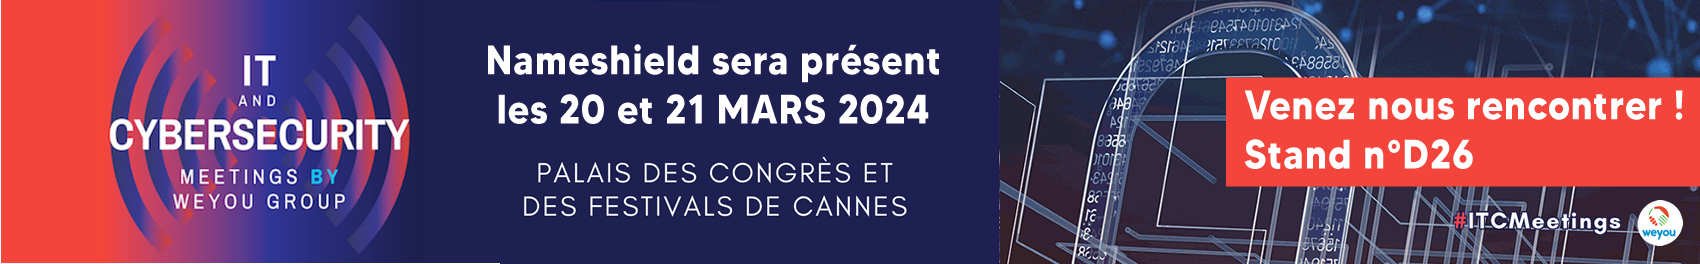 Nameshield sera présent à l’IT & CYBERSECURITY MEETINGS
Les 20 et 21 mars 2024 à Cannes